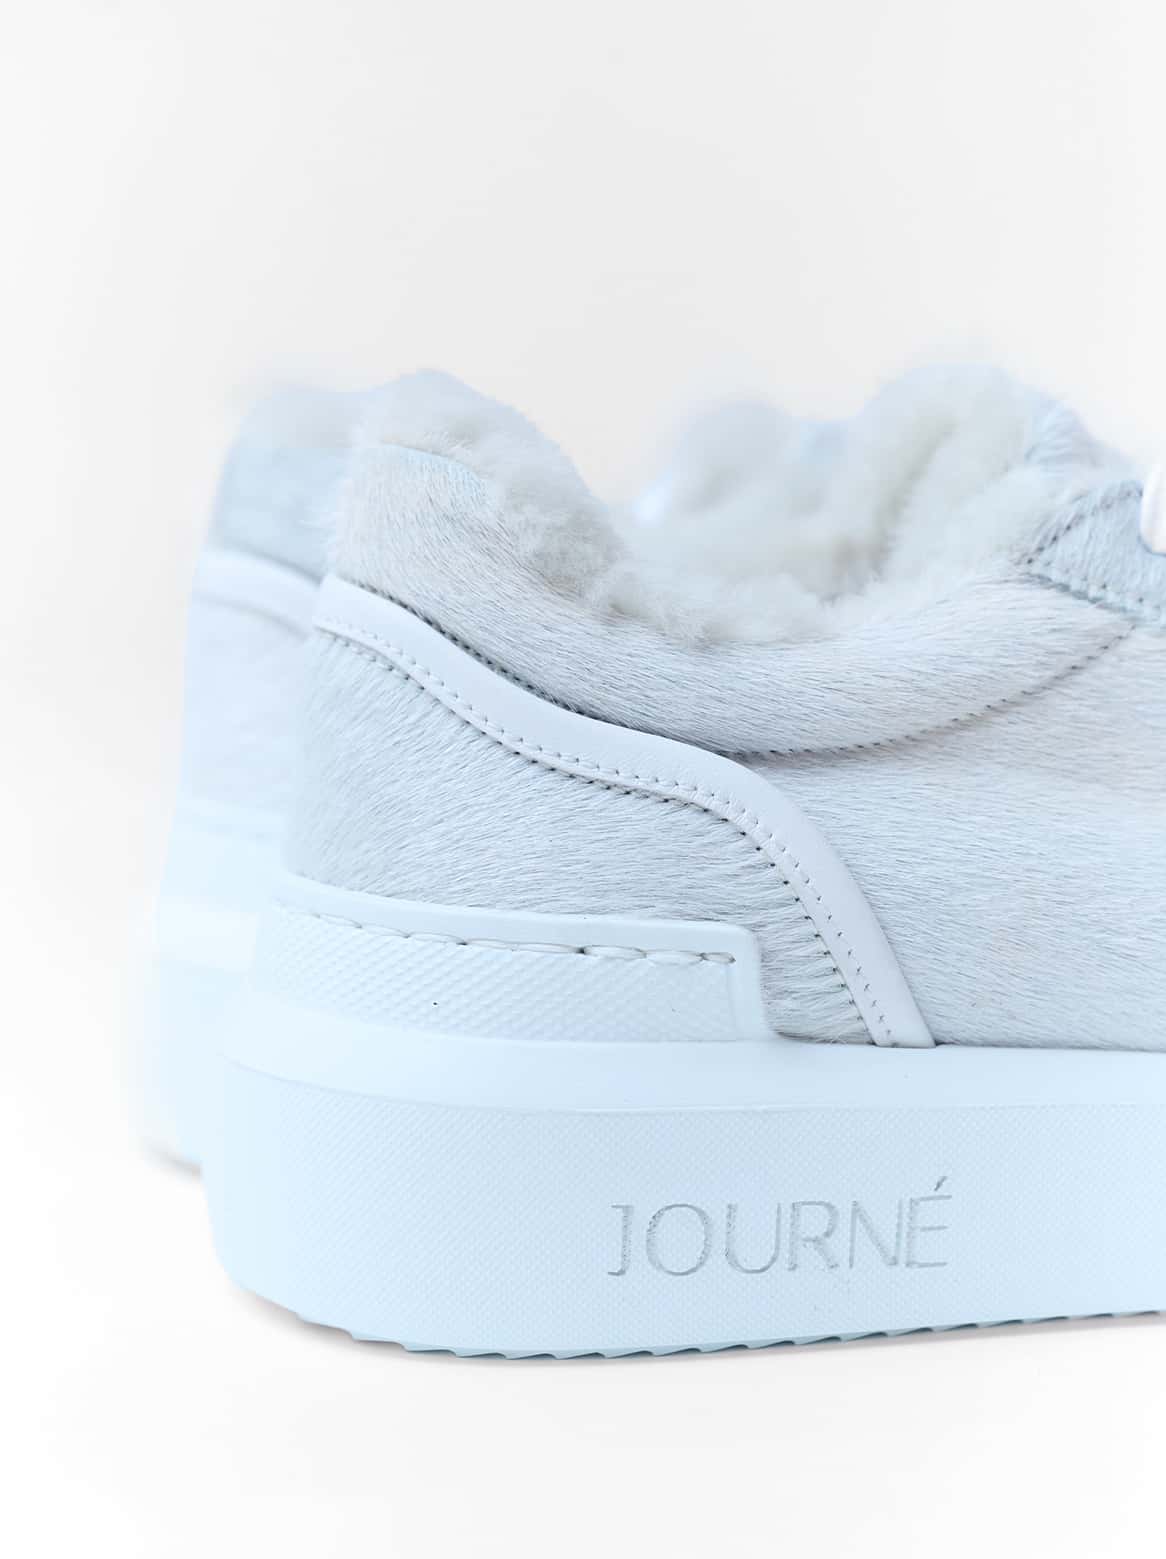 Journé Cavallino Sneaker in Creme-Weiß